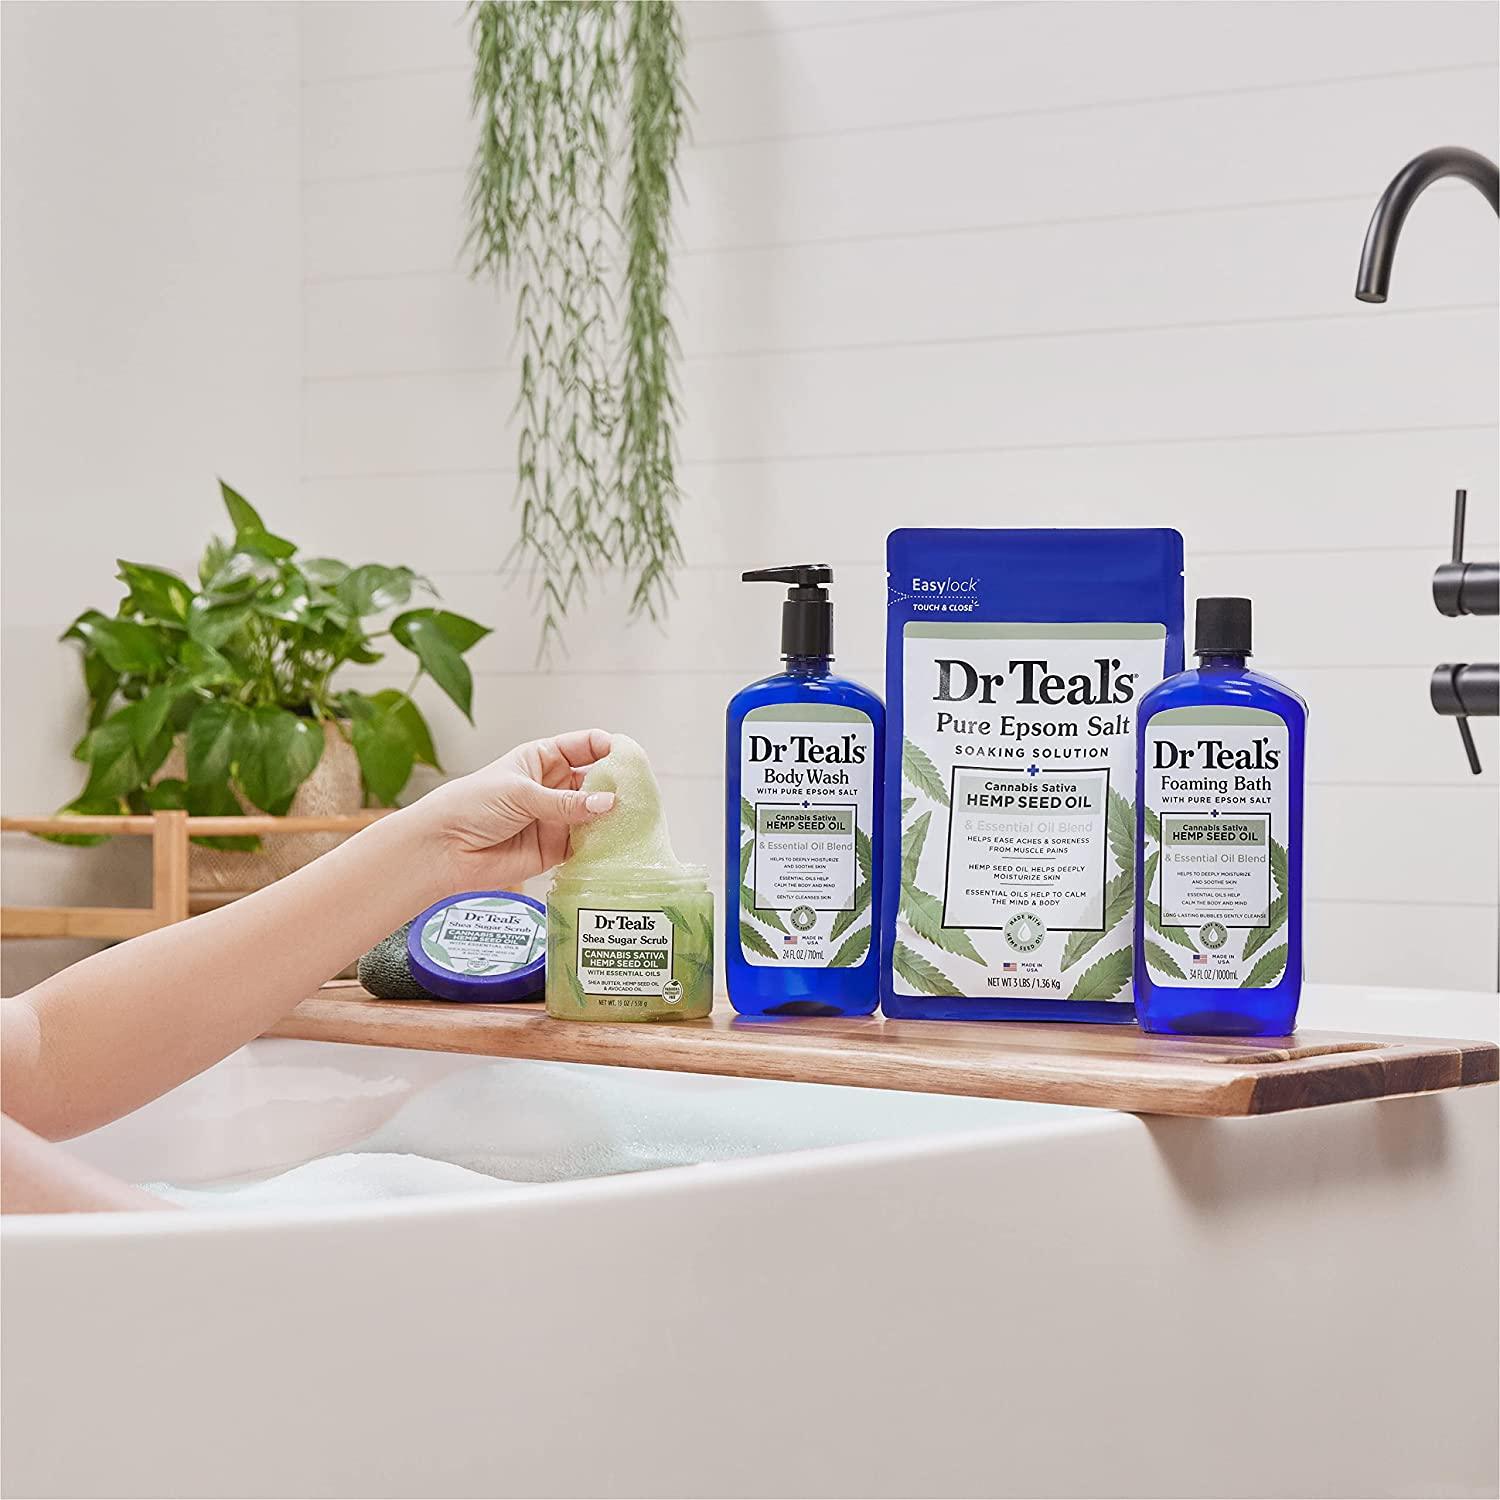 Dr. Teal'S Epsom Bath Salt - Cannabis Sativa Hemp Seed Oil - Wellness Shoppee